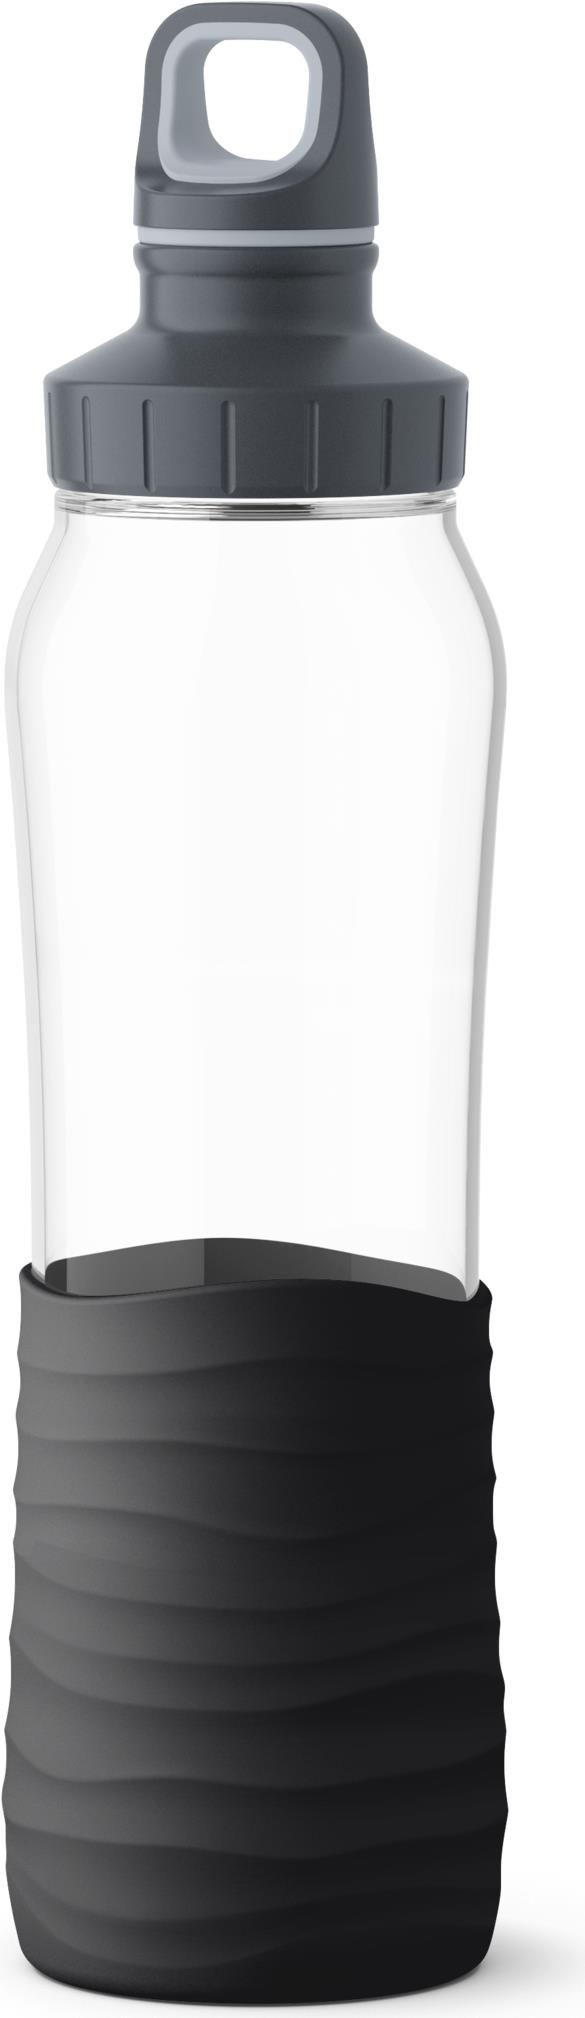 EMSA KW DRINK2GO GLASS N3100100 - 700 ml - Tägliche Nutzung - Schwarz - Transparent - Glas - Schraubdeckel - Polypropylen (PP) (N3100100) von EMSA